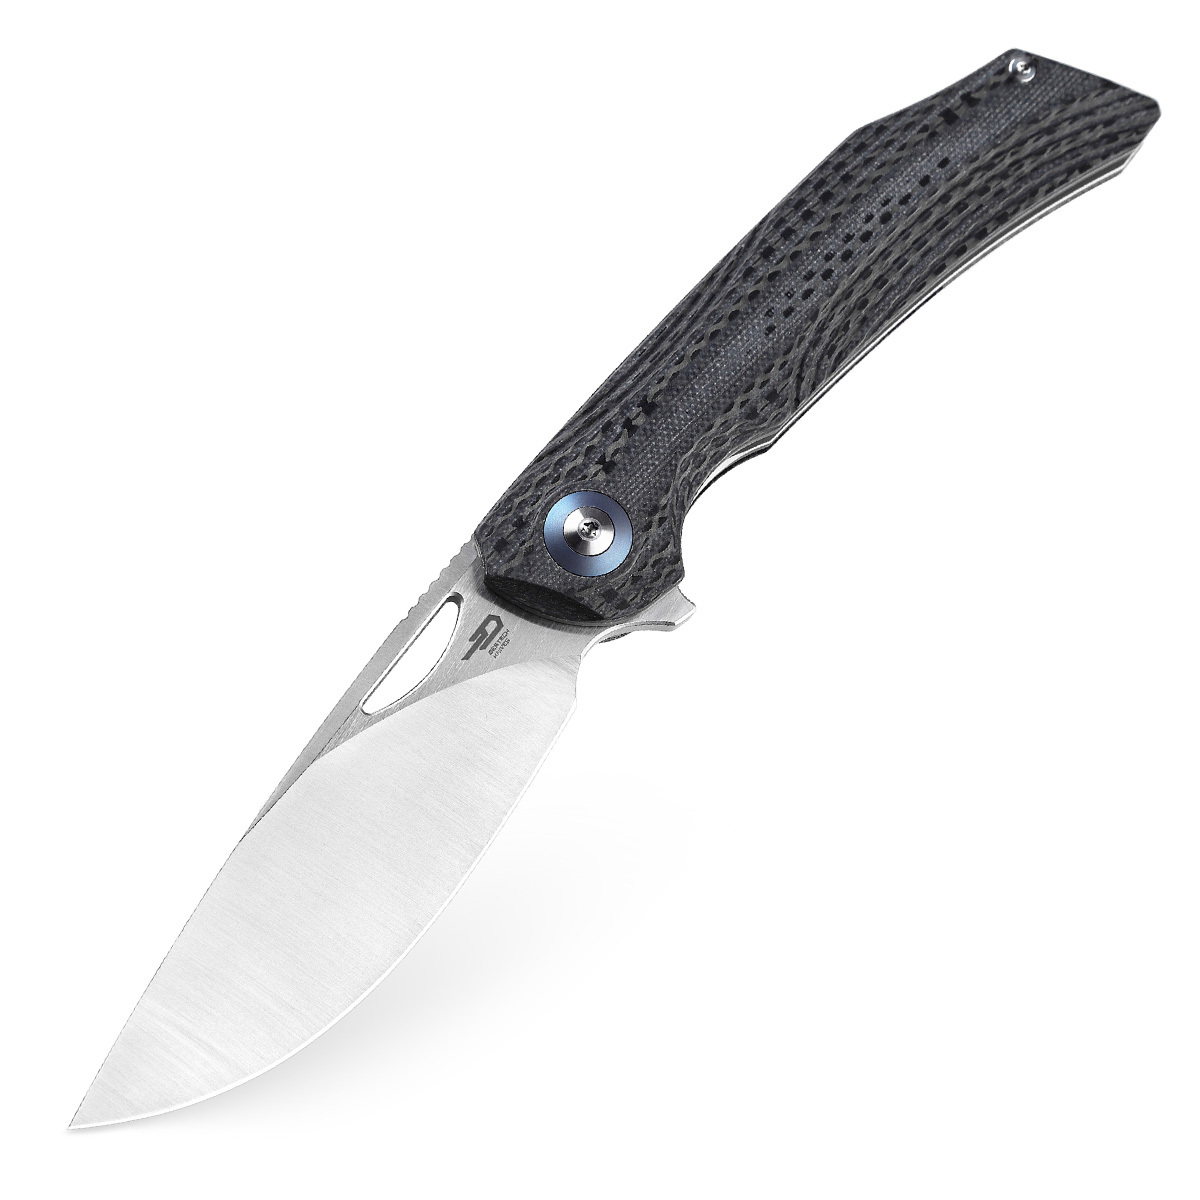 Складной нож Bestech Falko, сталь 154CM, рукоять G10/Carbon fiber складной нож bestech tonic сталь m390 рукоять титан черная микарта